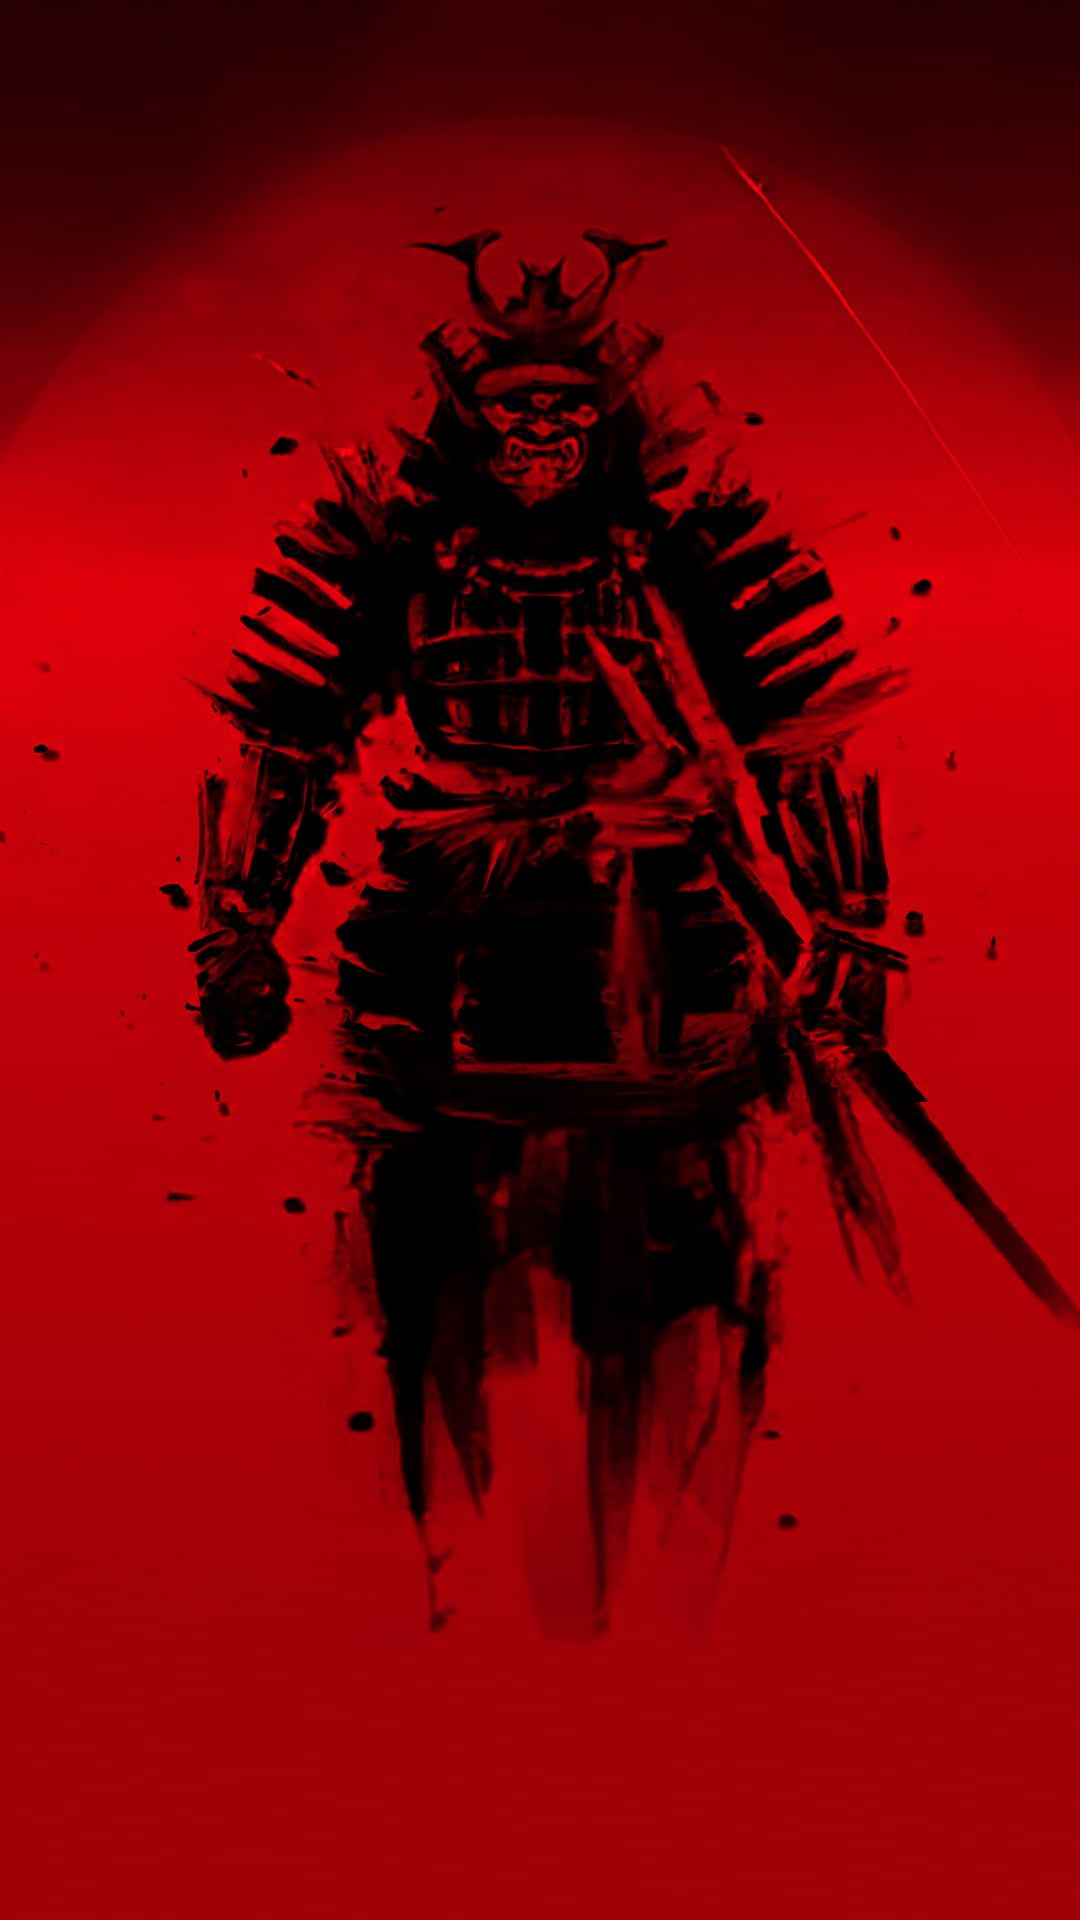 HD wallpaper: samurai, red, Japan, digital art, smartphone